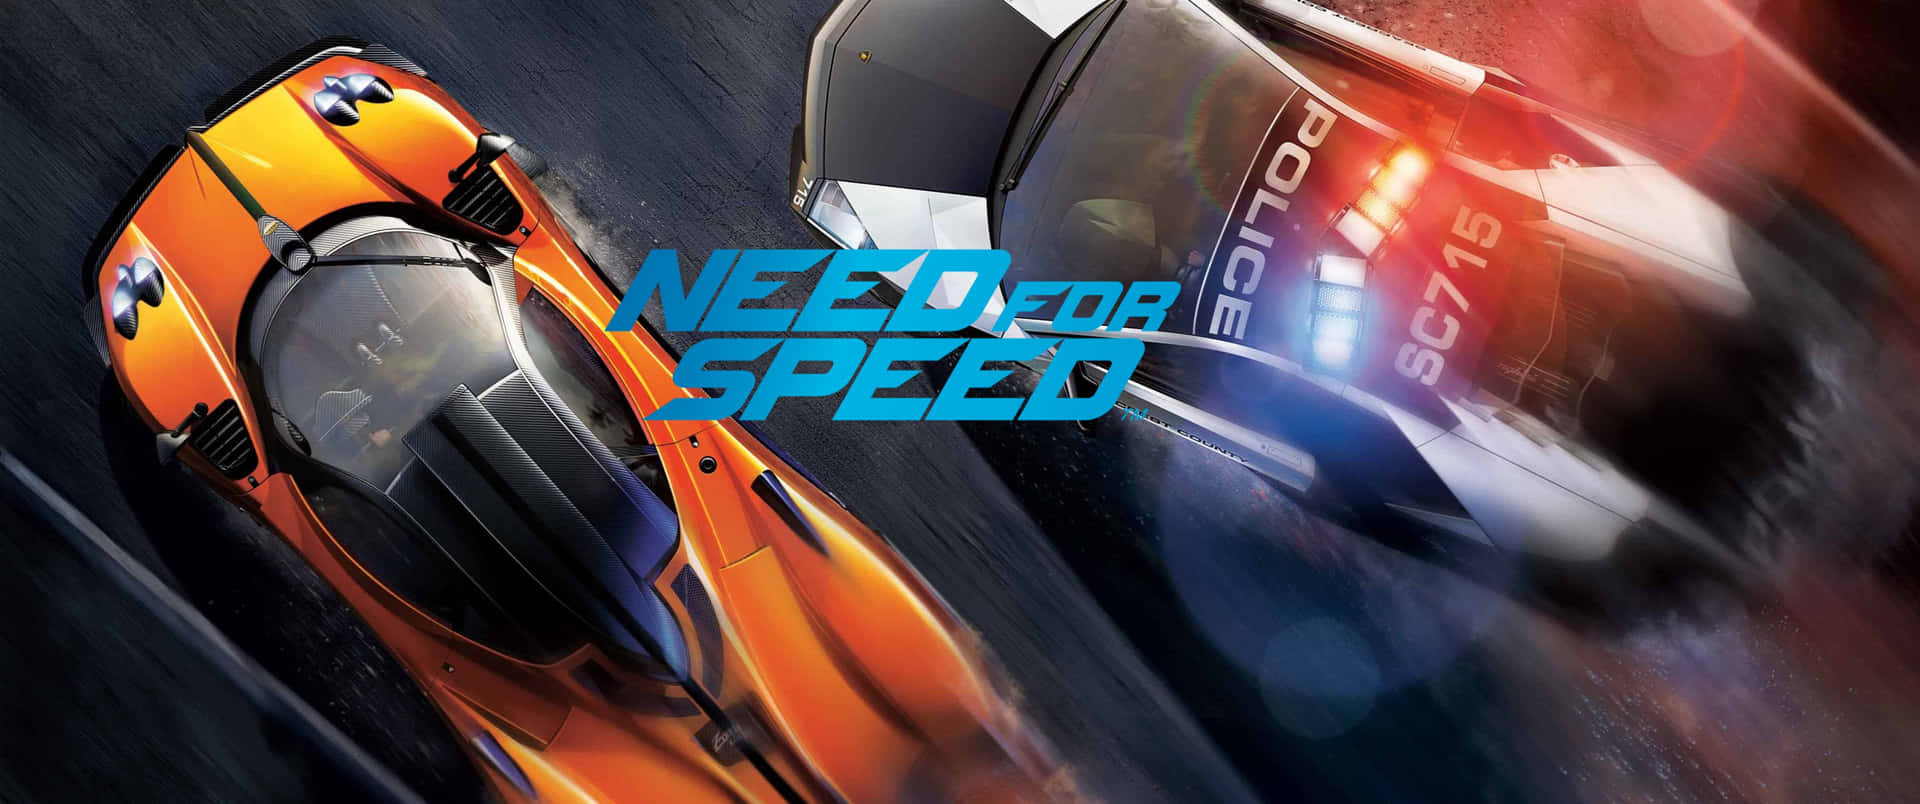 Garaverso La Vittoria In Need For Speed